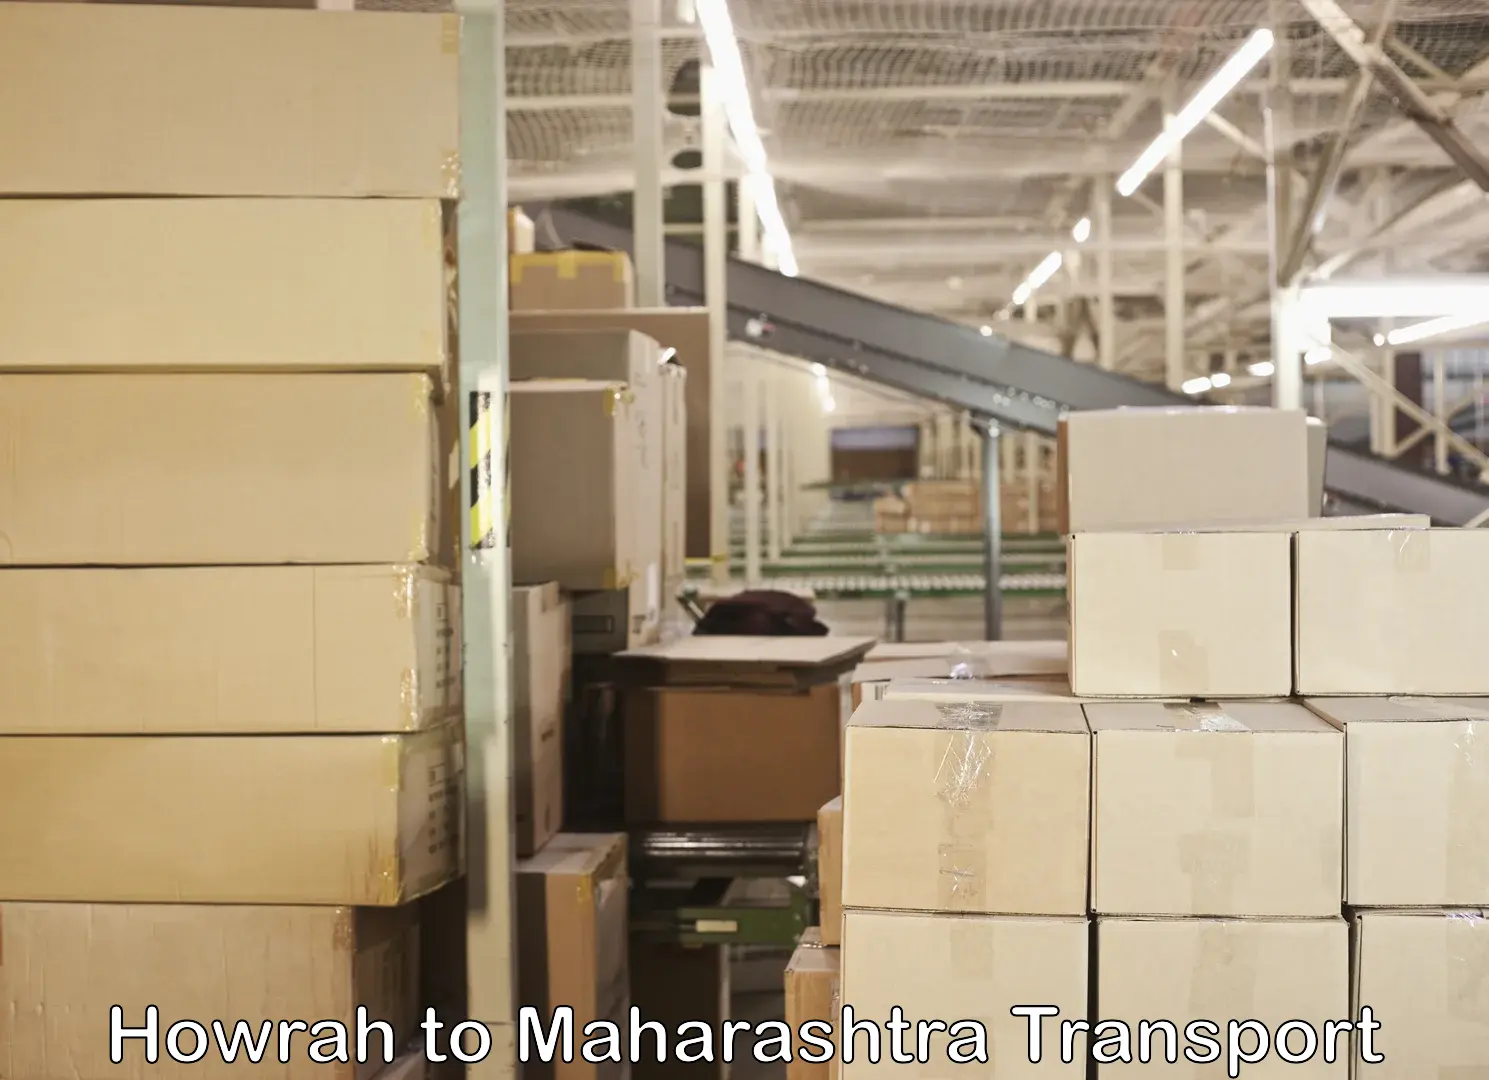 Lorry transport service Howrah to Maharashtra